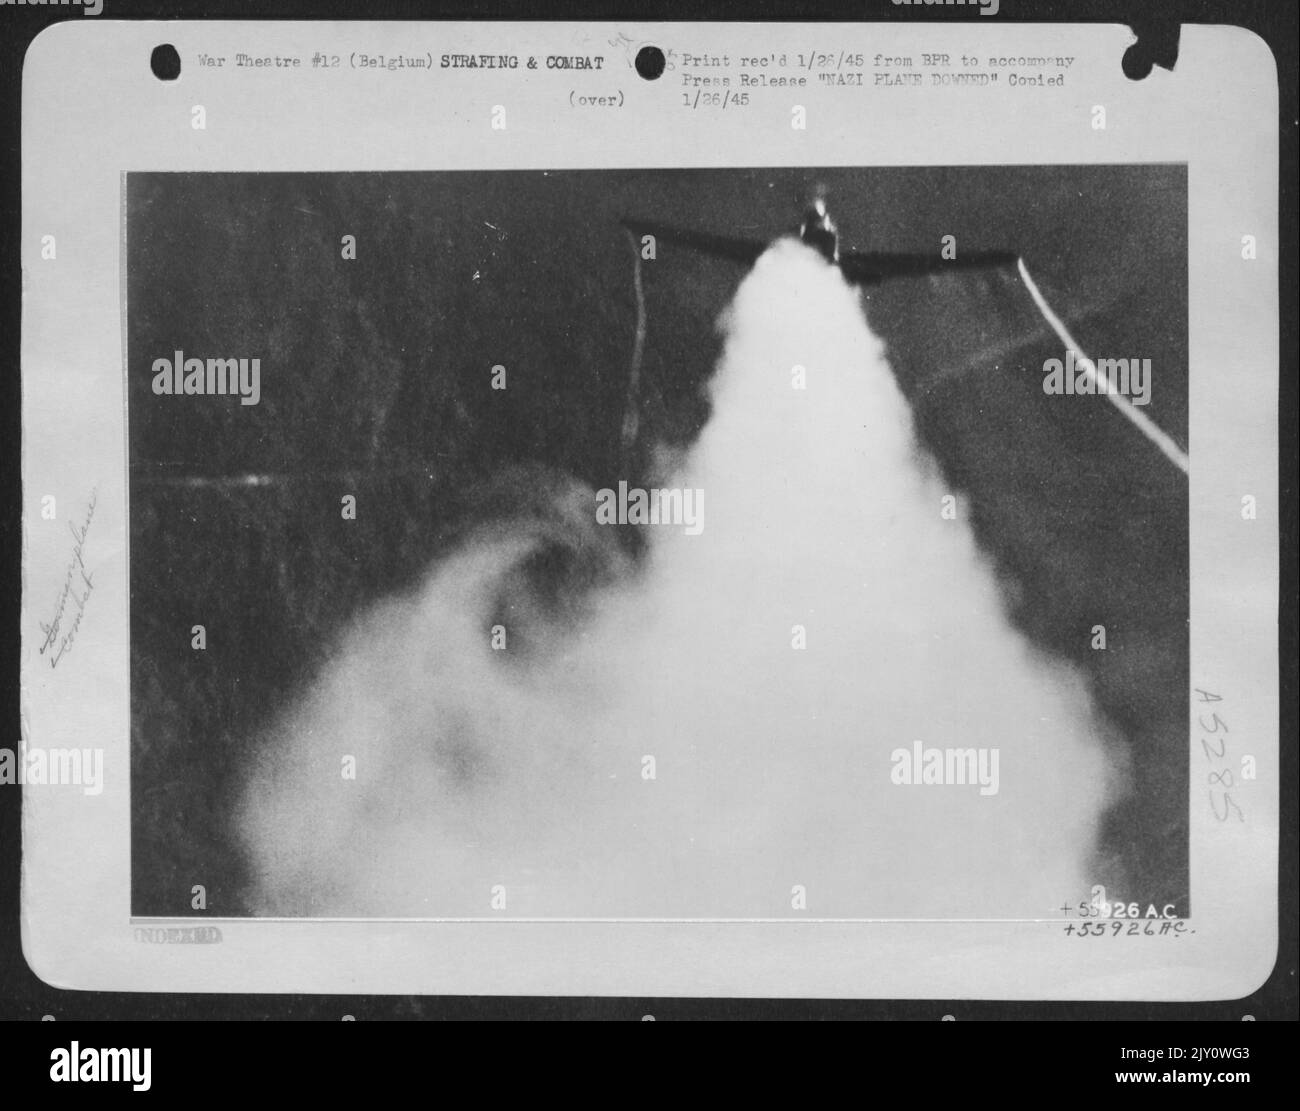 Dies ist eines der vielen deutschen Kampfflugzeuge, die von den US Army 9. Air Force Jagdbomberpiloten während der "Battle of the Bulge" in Belgien zerstört wurden. Es wird LT. John H. Wallace, 79 Butler St., Dorchester, Mass., gutgeschrieben, dessen Pistole-Kamera aufgenommen hat Stockfoto